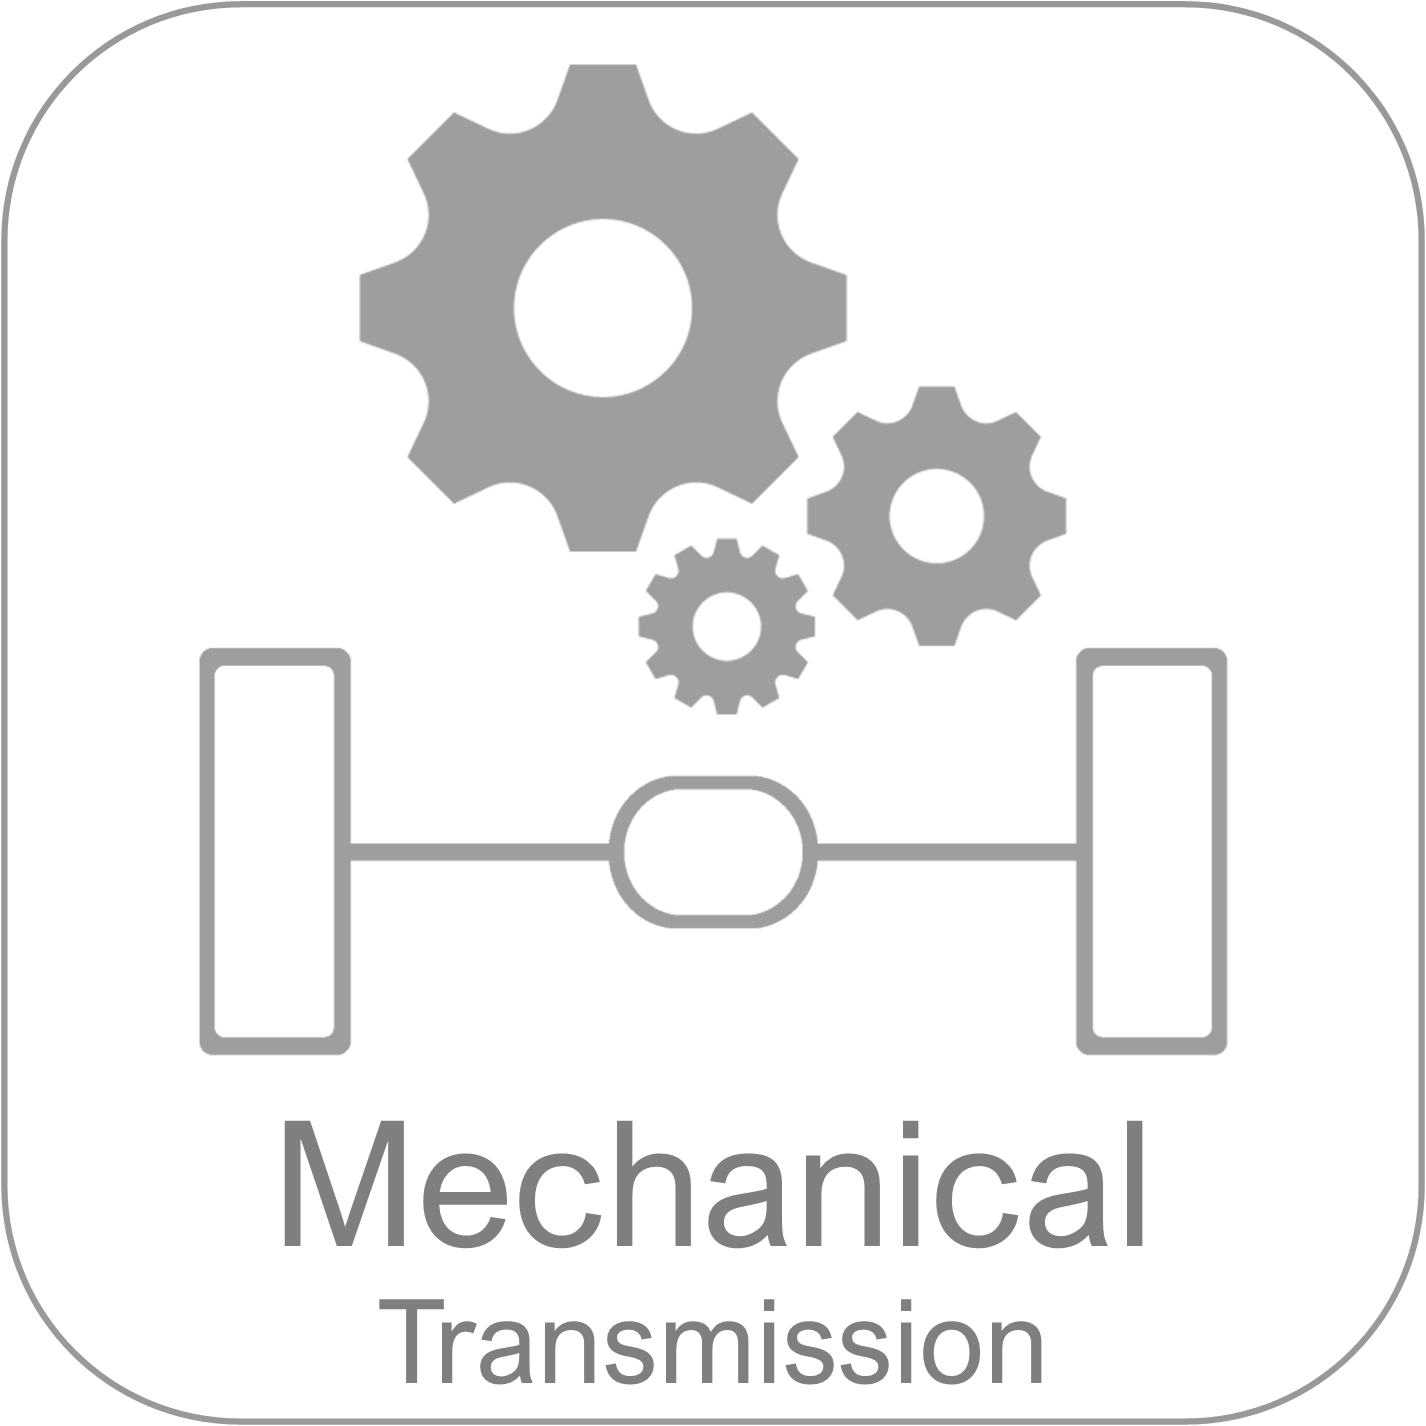 Volquetes Serie DM - Transmisión mecánica